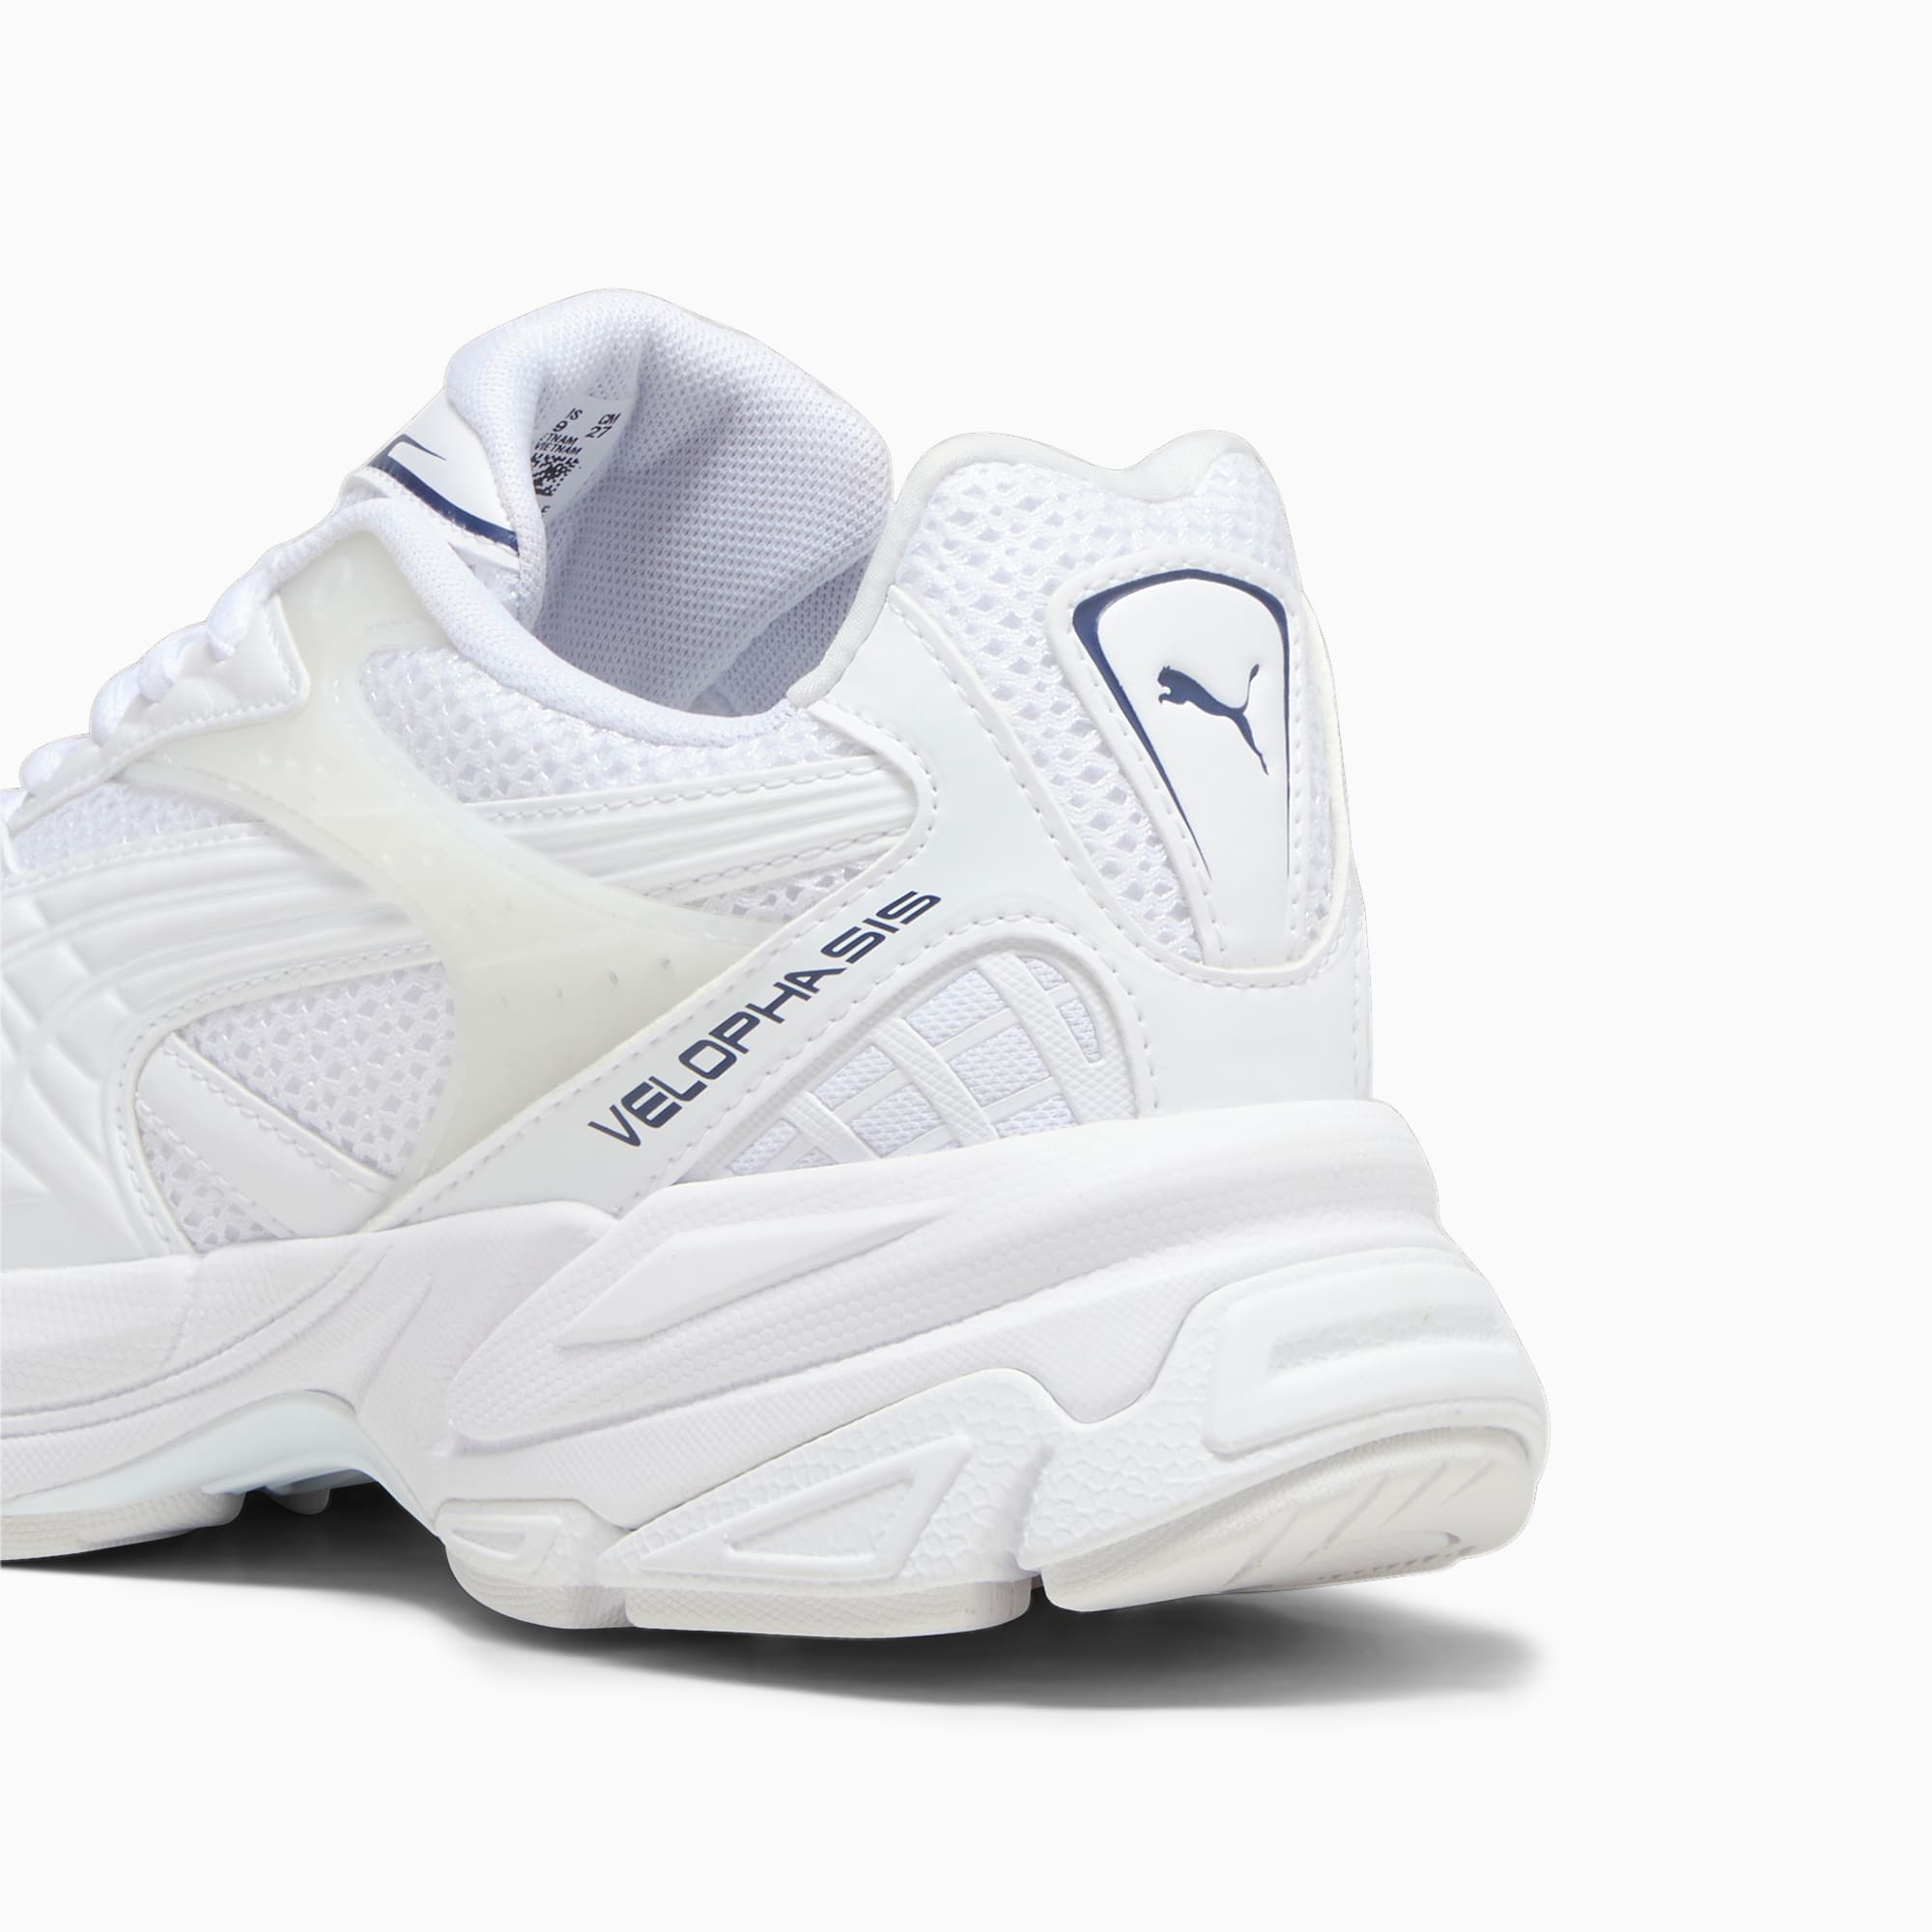 PUMA Velophasis Technisch Sneakers Schuhe, Weiß/Blau, Größe: 36, Schuhe